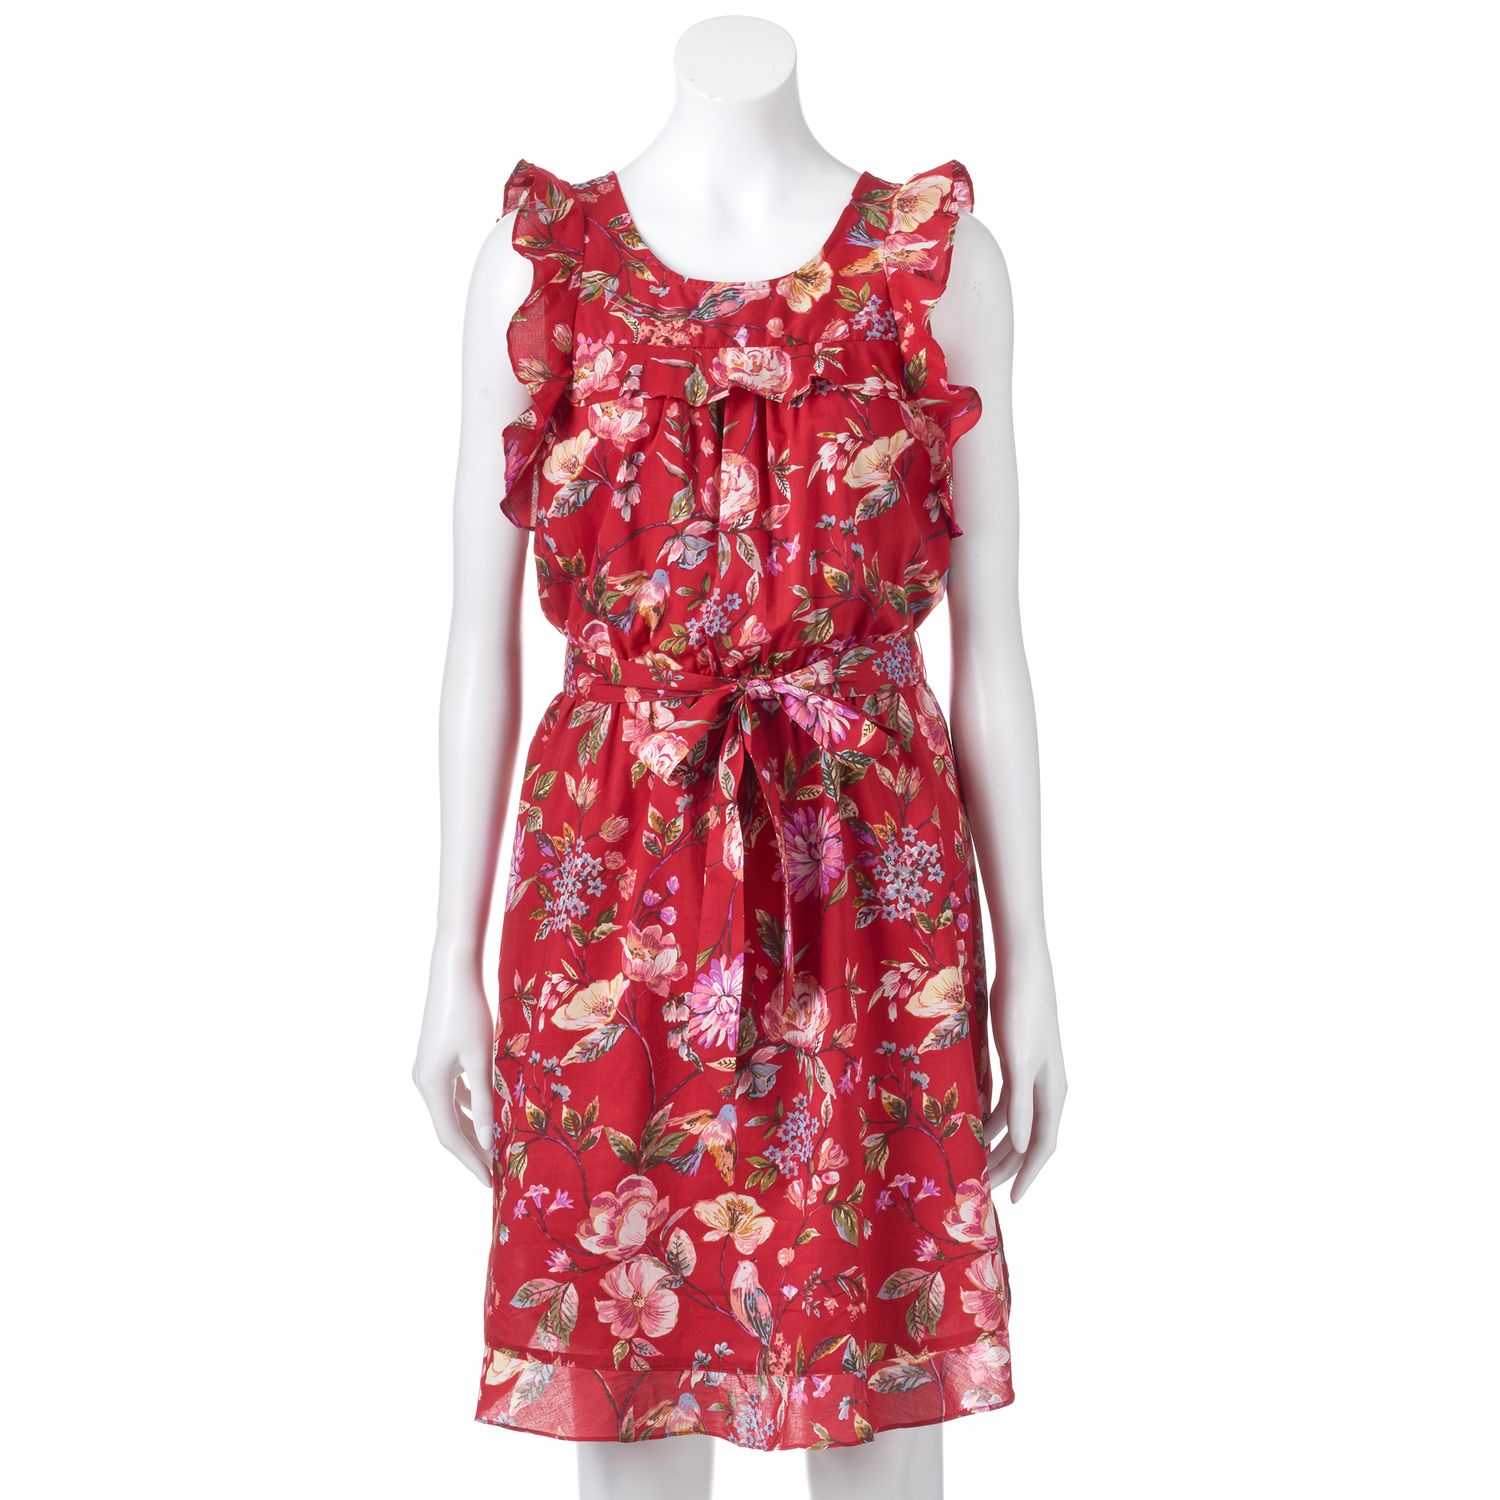 lauren conrad dresses online